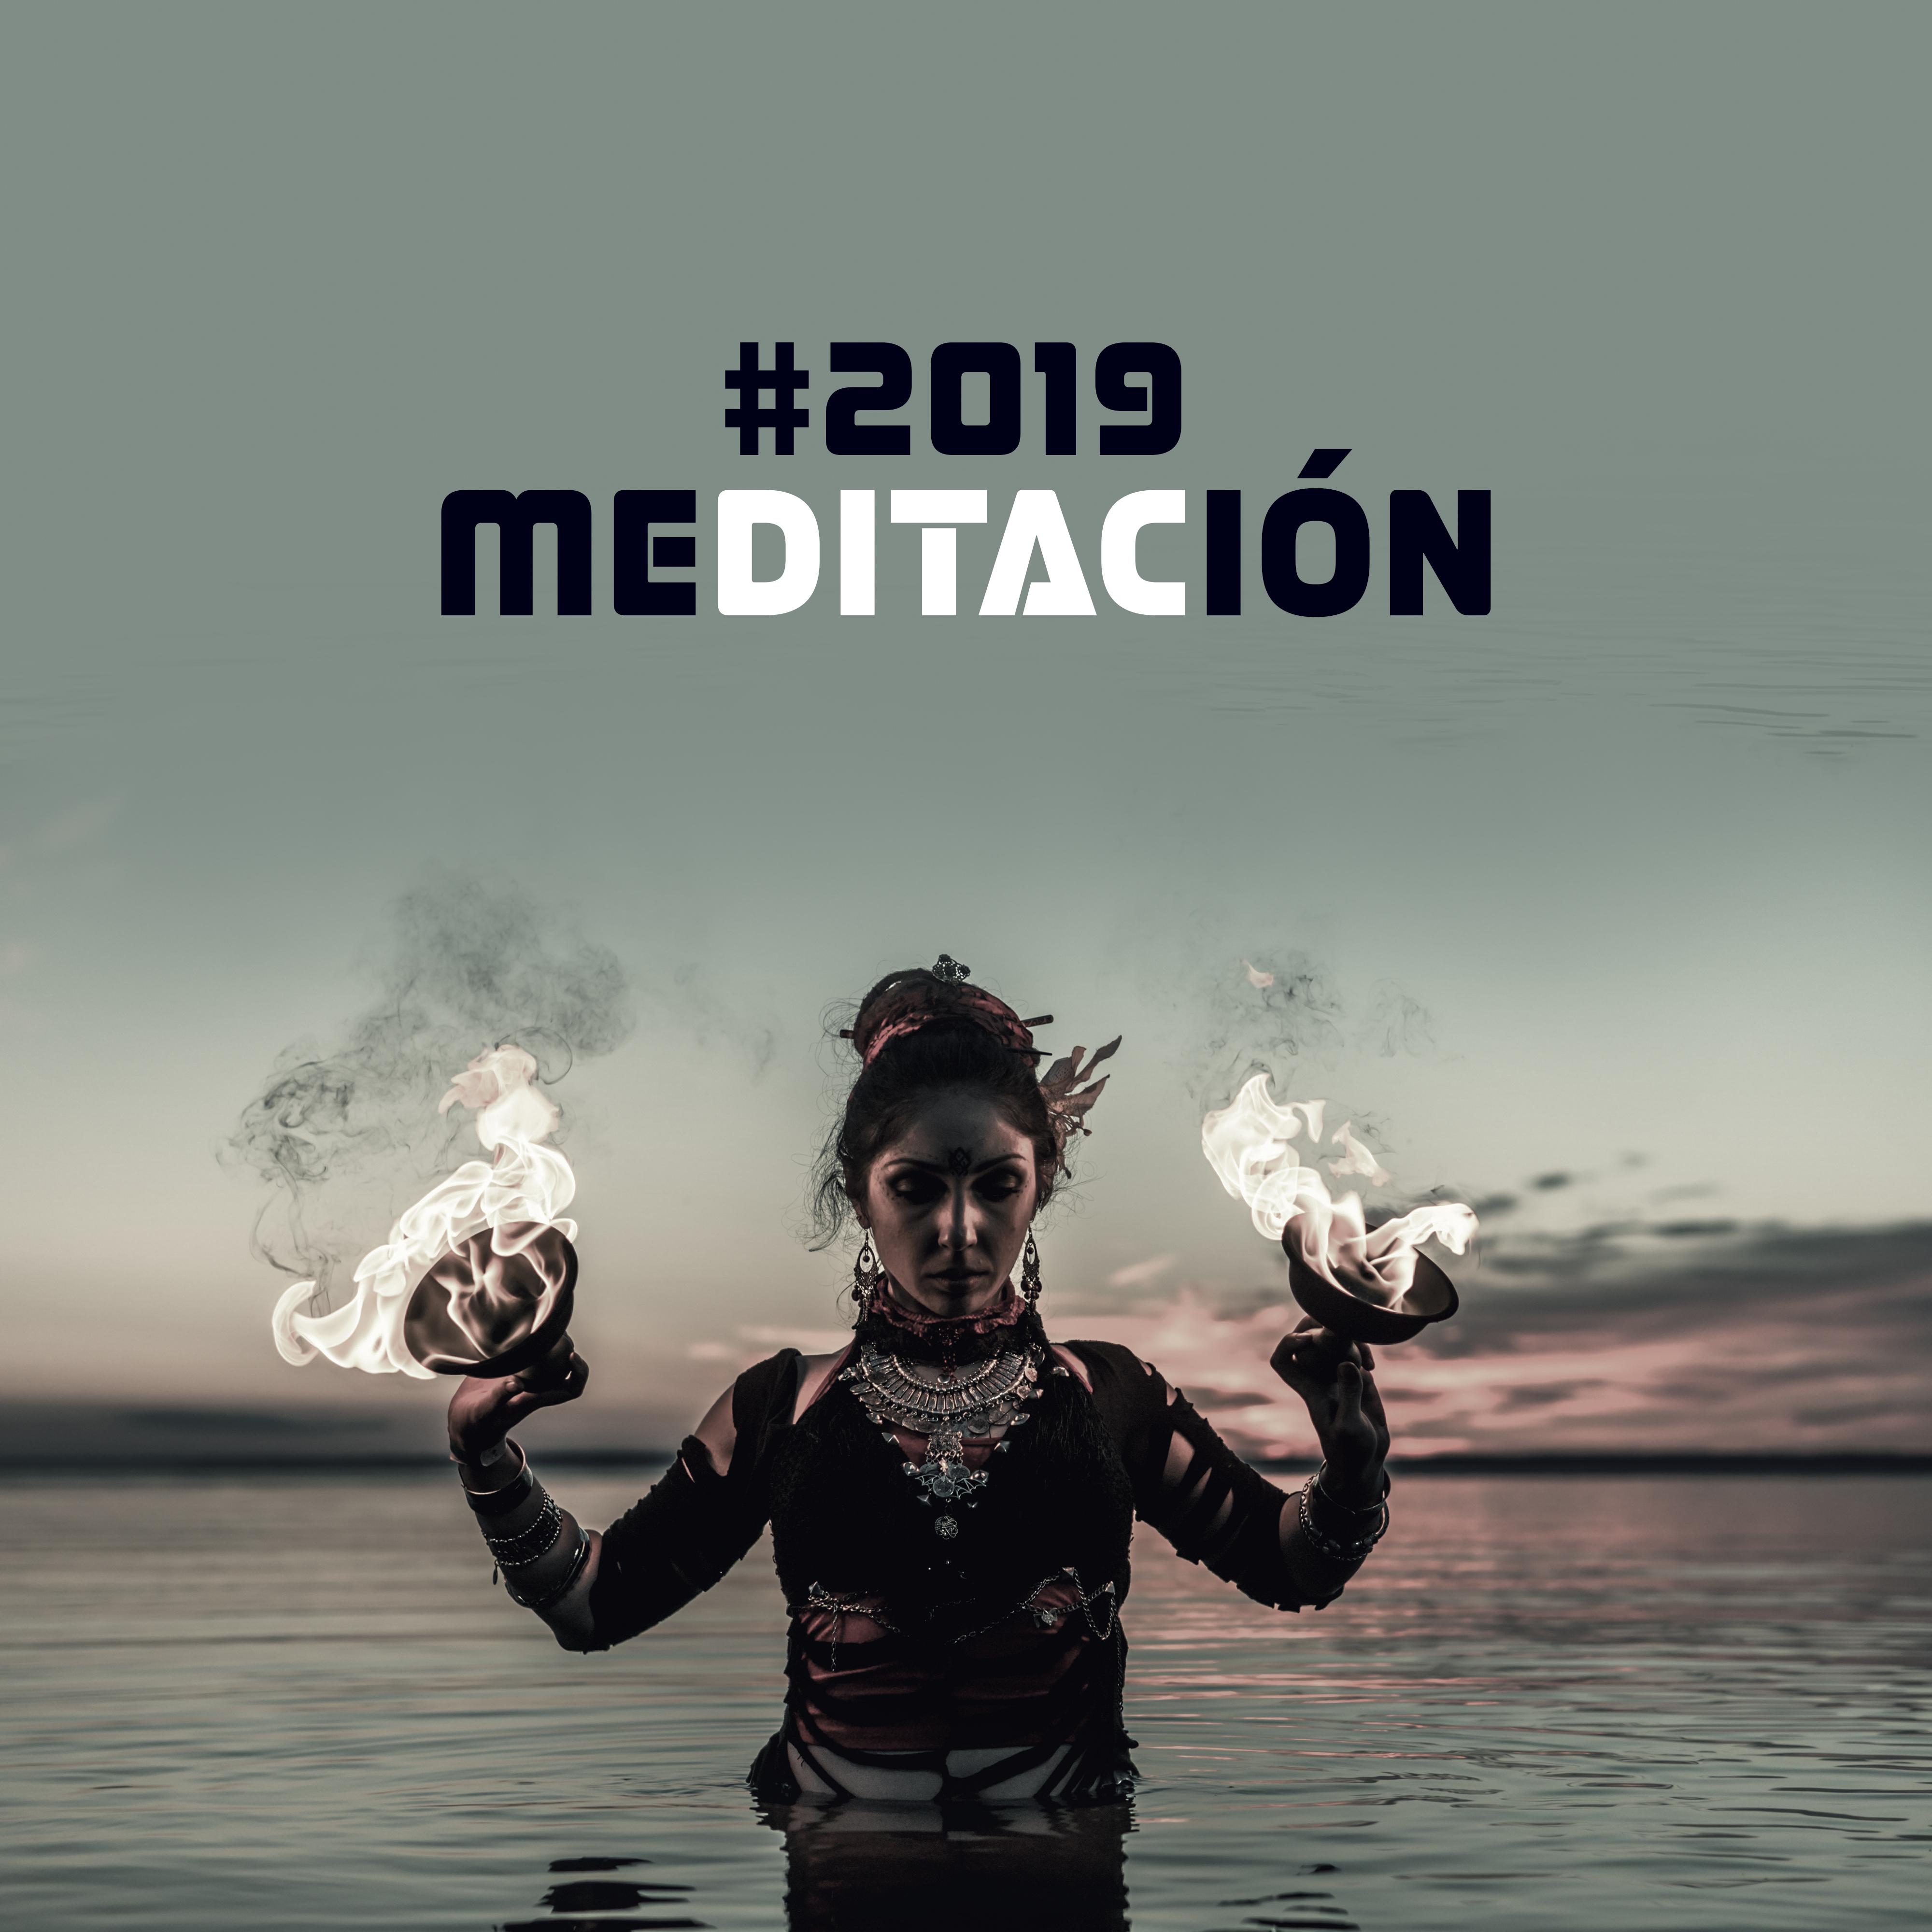 2019 Meditacio n  Mu sica Relajante para Yoga, Meditacio n, Armoni a, Alivio de Estre s, Mente Tranquila, Meditacio n Profunda